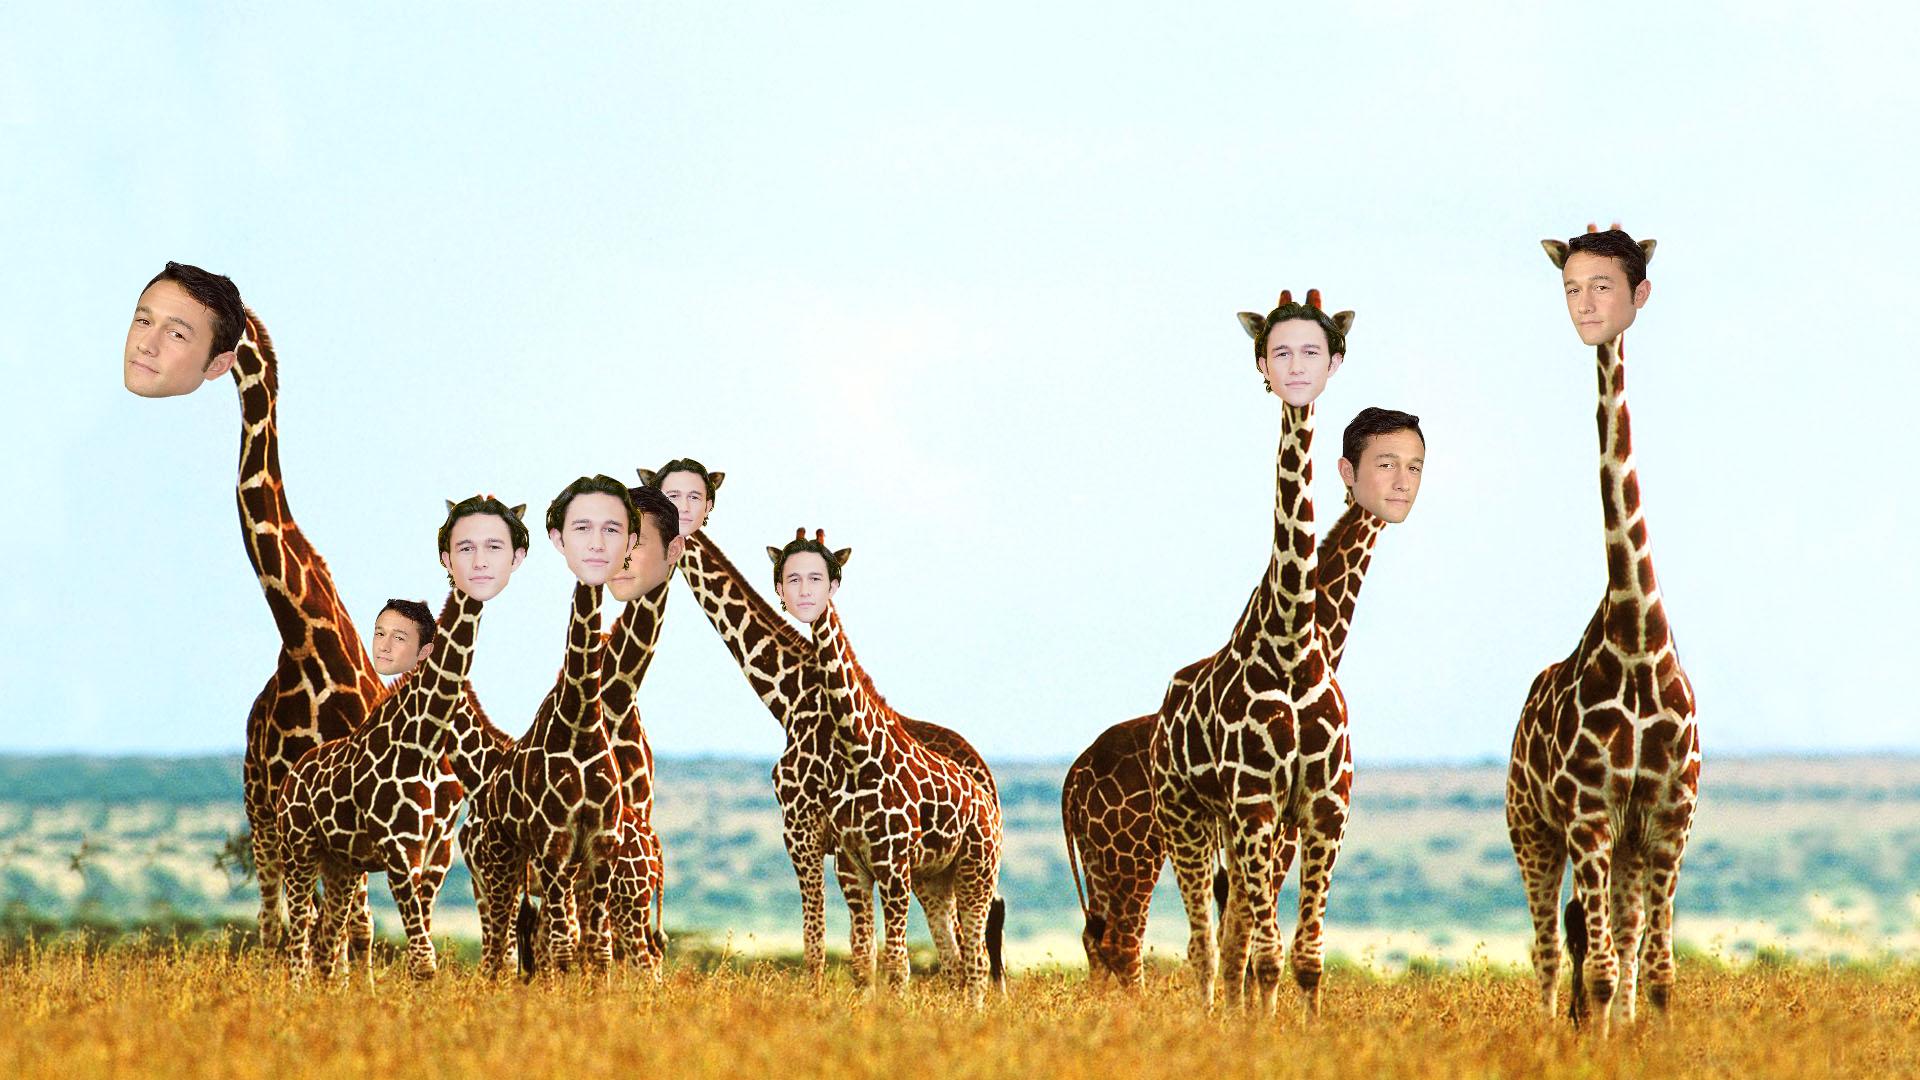 Jgl Giraffes